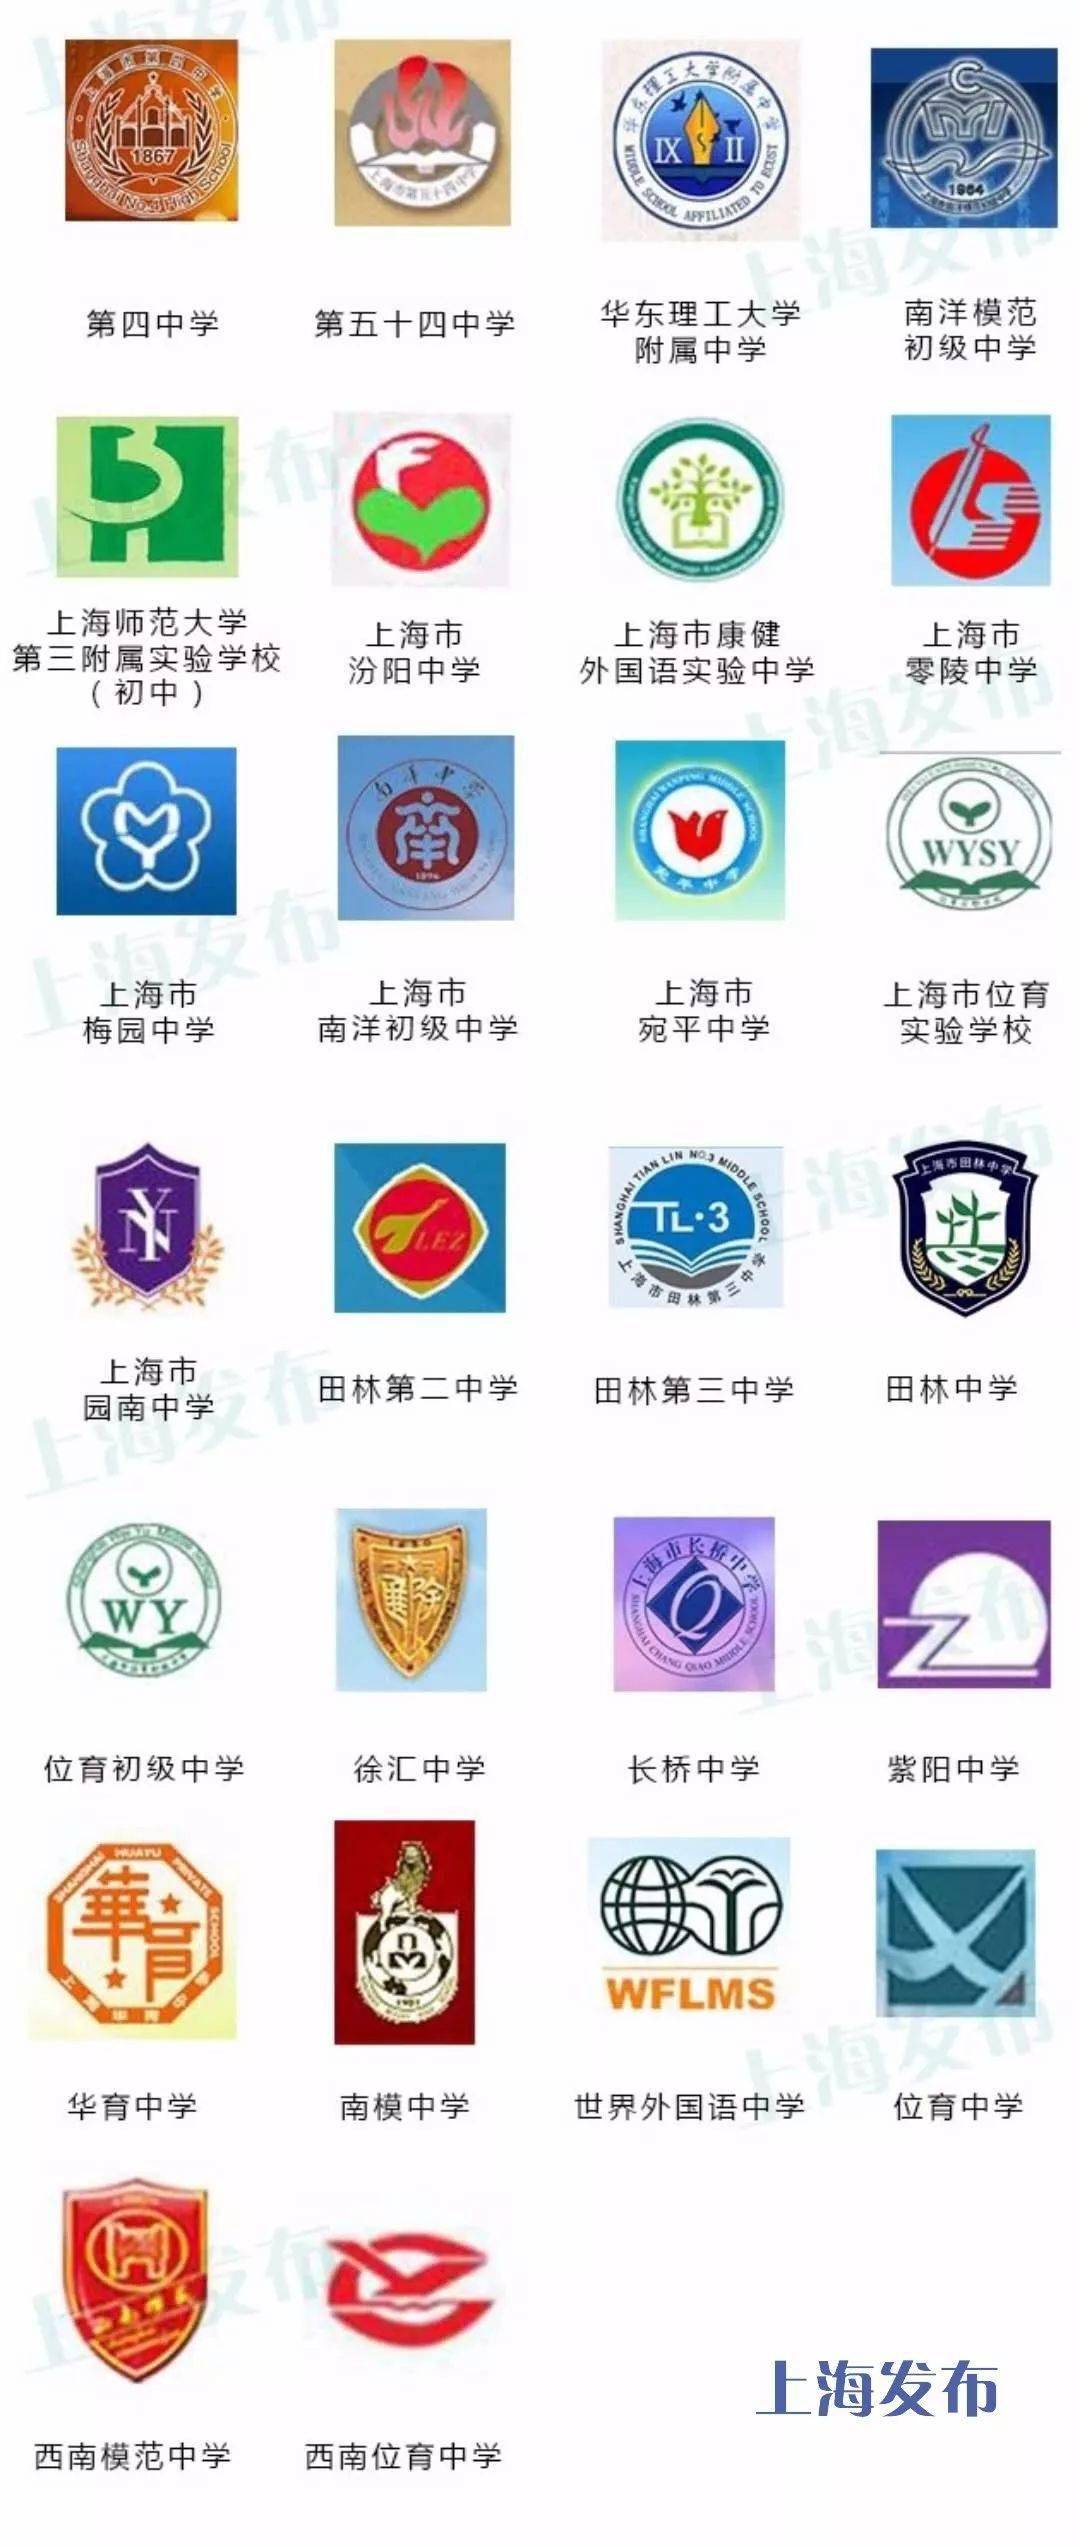 上海新中高级中学校徽图片